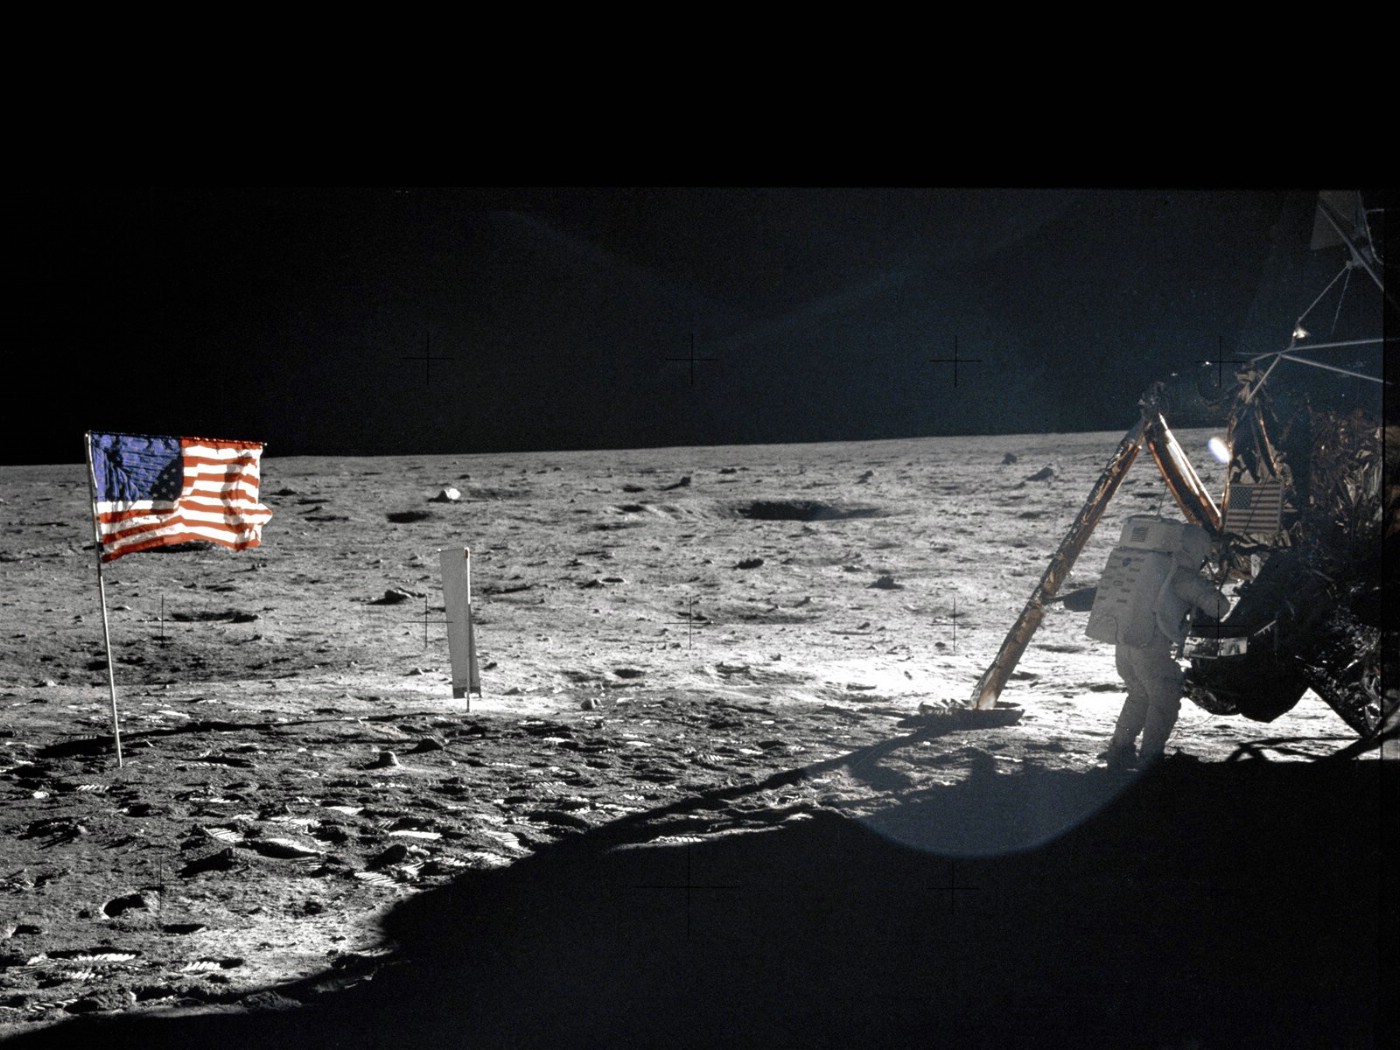 壁纸1400x1050One Giant Leap for Mankind  Neil Armstrong On The Moon 登月舱旁的阿姆斯壮壁纸 阿波罗11号登月40周年纪念壁纸壁纸 阿波罗11号登月40周年纪念壁纸图片 阿波罗11号登月40周年纪念壁纸素材 人文壁纸 人文图库 人文图片素材桌面壁纸